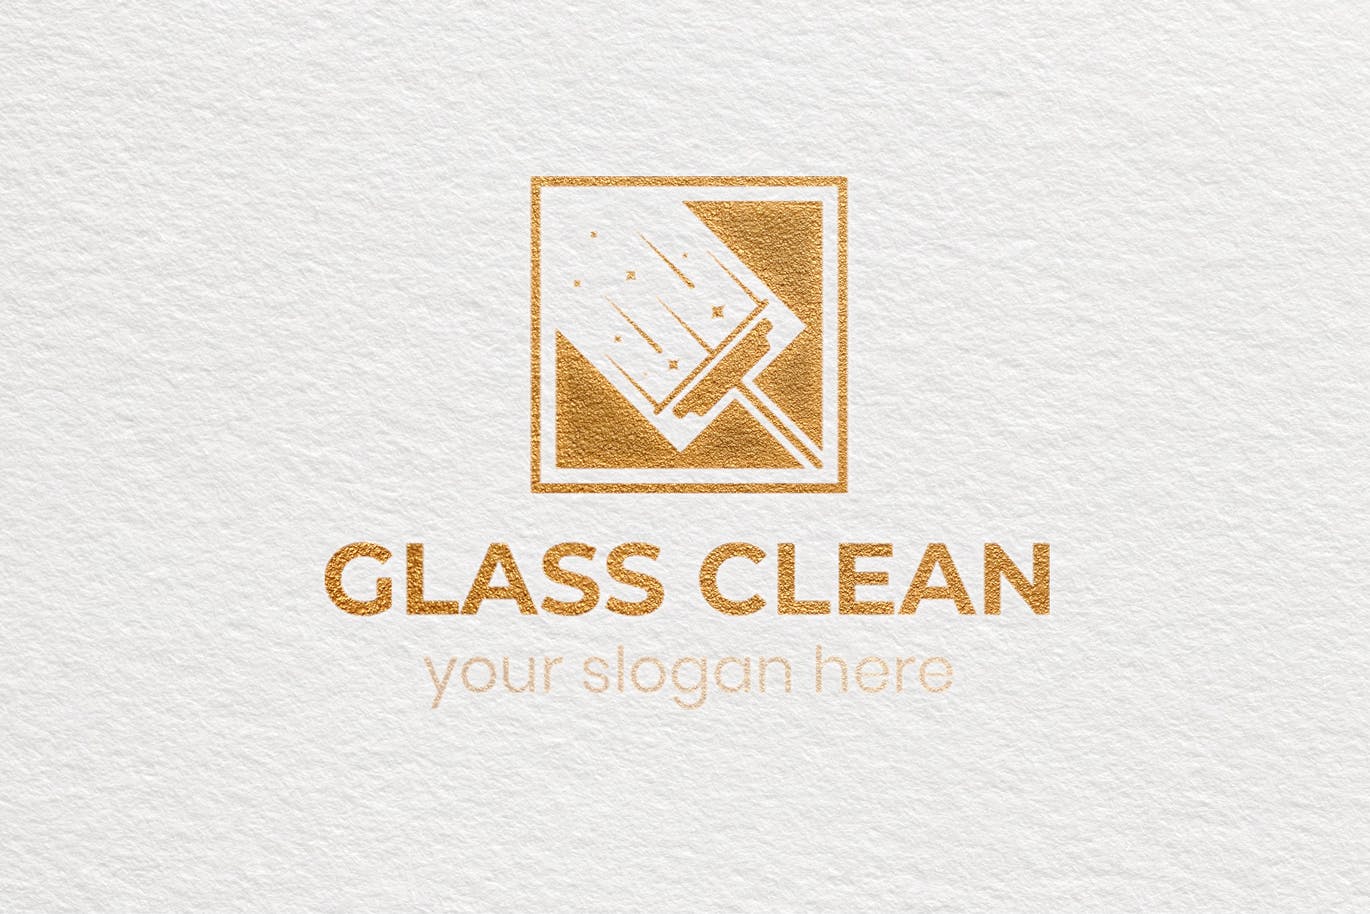 玻璃清洁服务Logo设计第一素材精选模板 Glass Clean Business Logo Template插图(3)